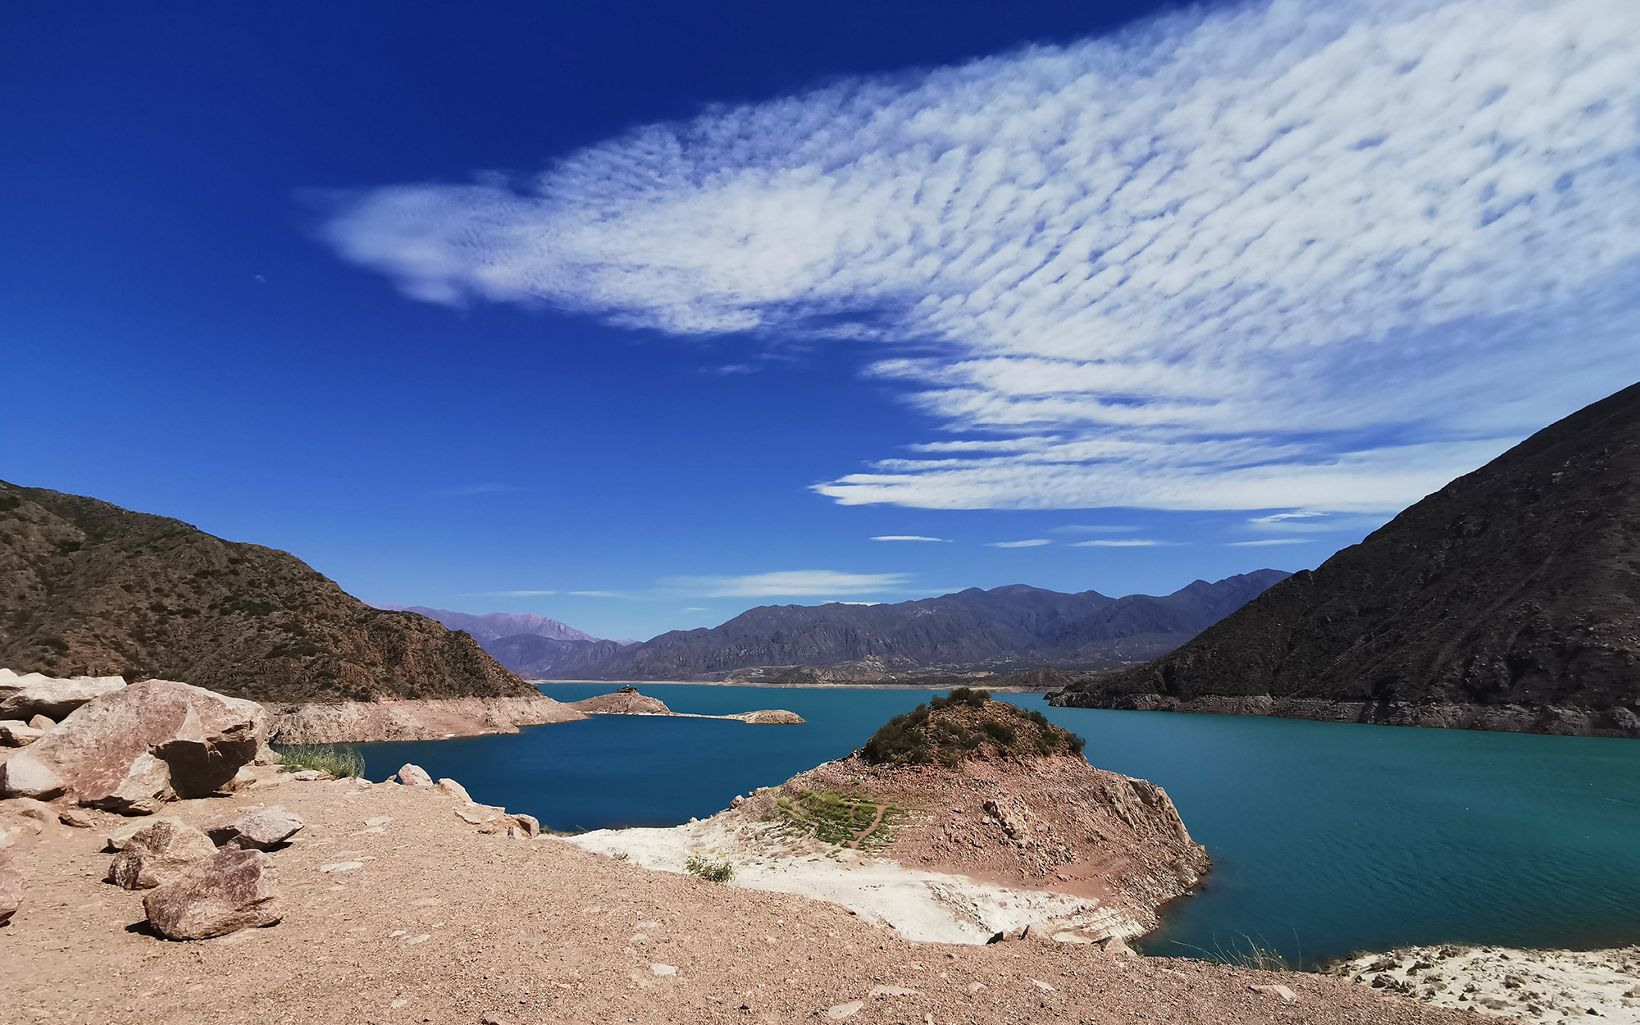 95% of the Mendoza River flow originates here